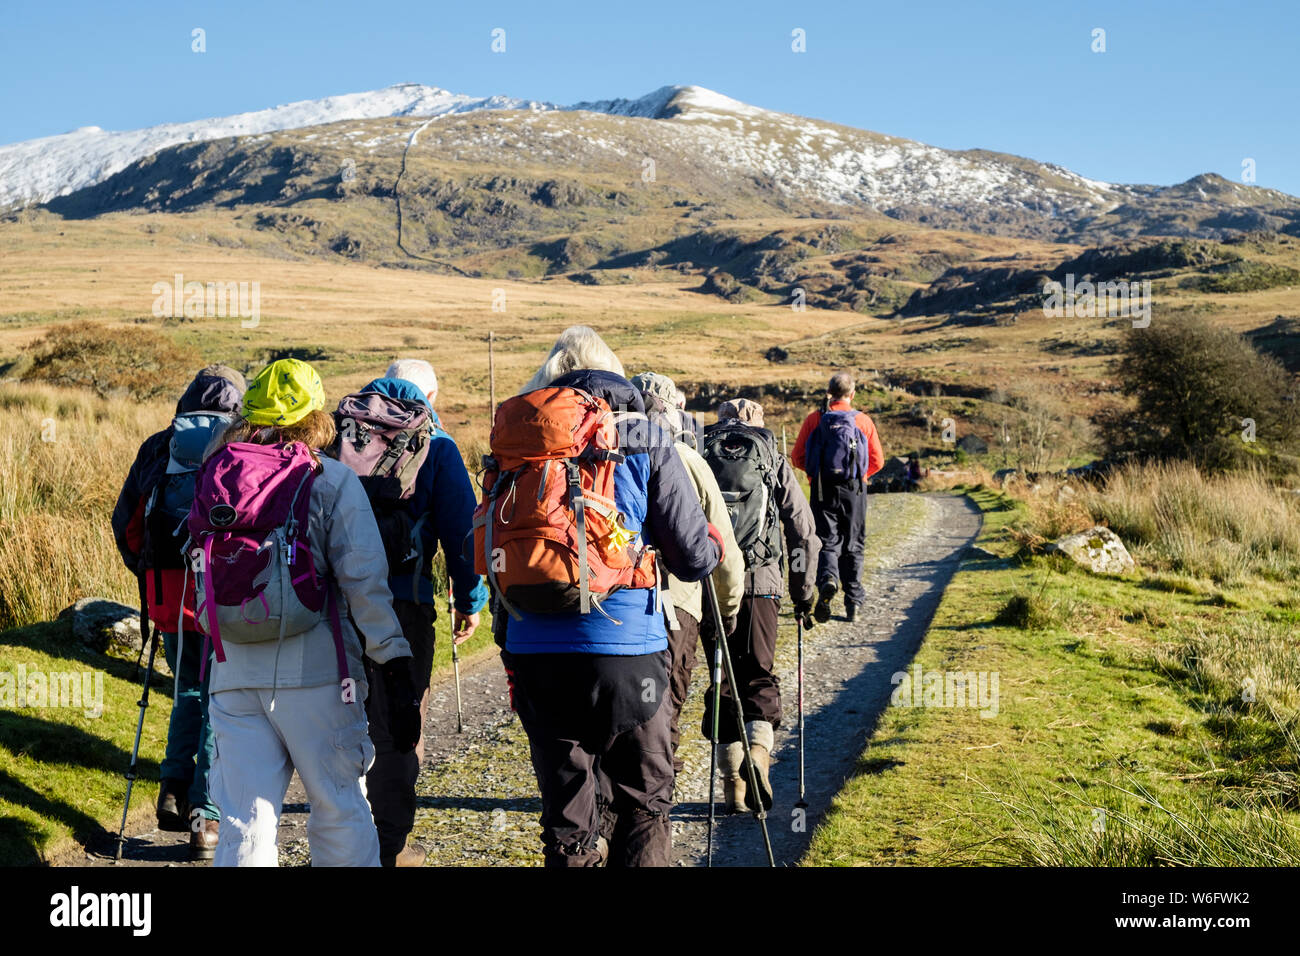 Wandergruppen wandern auf dem Rhyd-DDU Pfad zum schneebedeckten Mt Snowdon Gipfel in den Bergen des Snowdonia National Park. Rhyd-DDU Gwynedd Wales Großbritannien Stockfoto